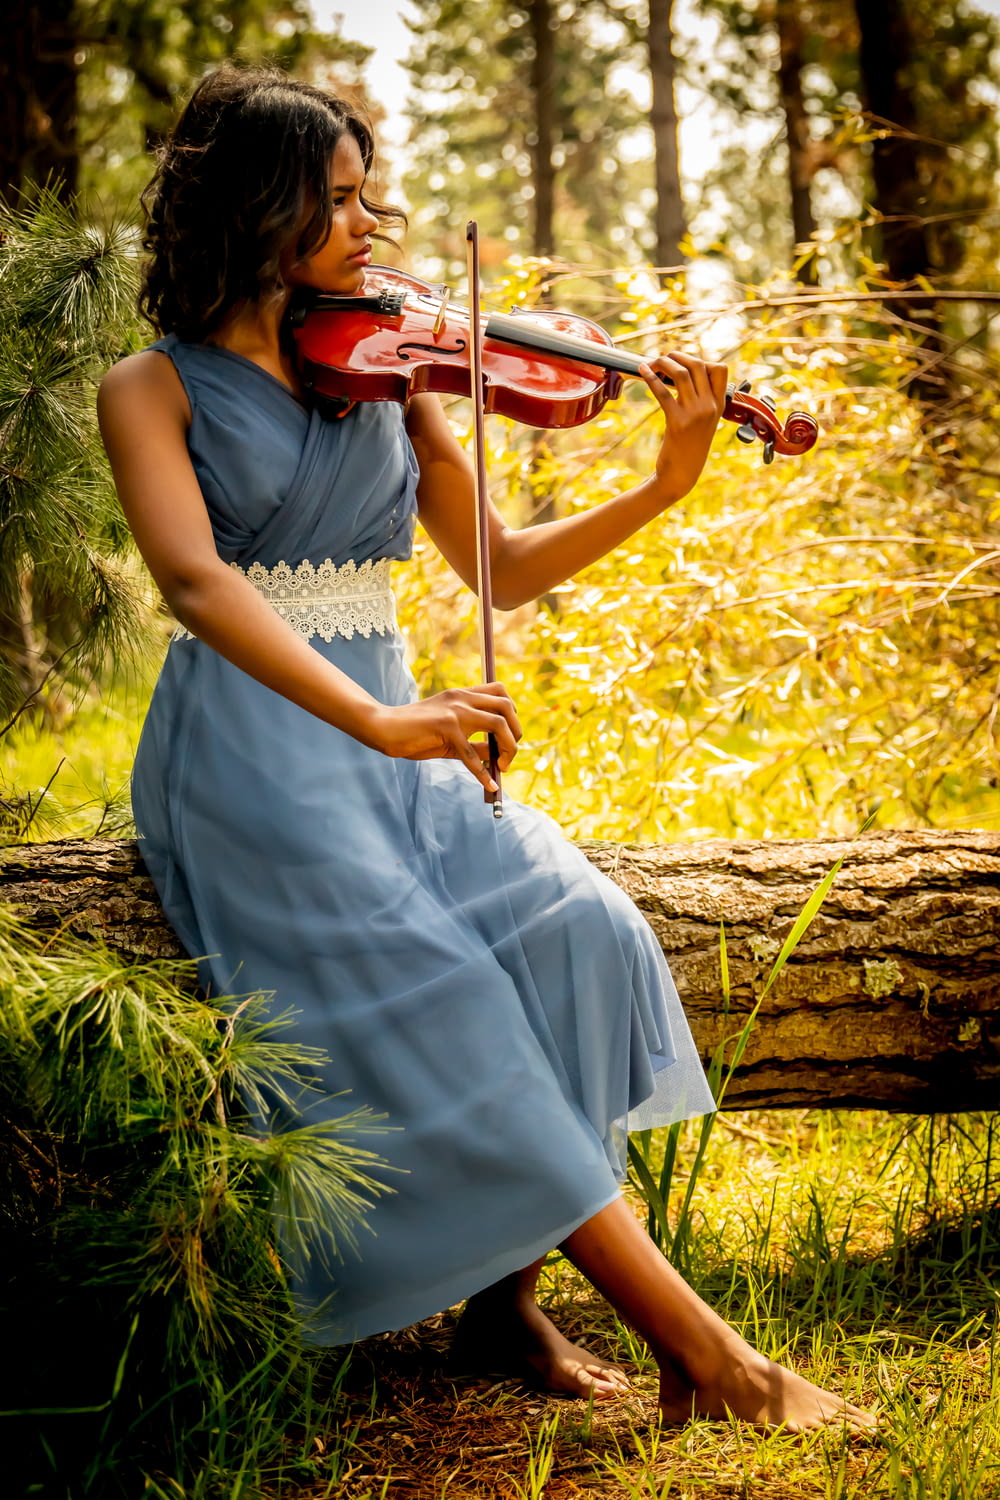 Mujer con vestido blanco tocando el violín